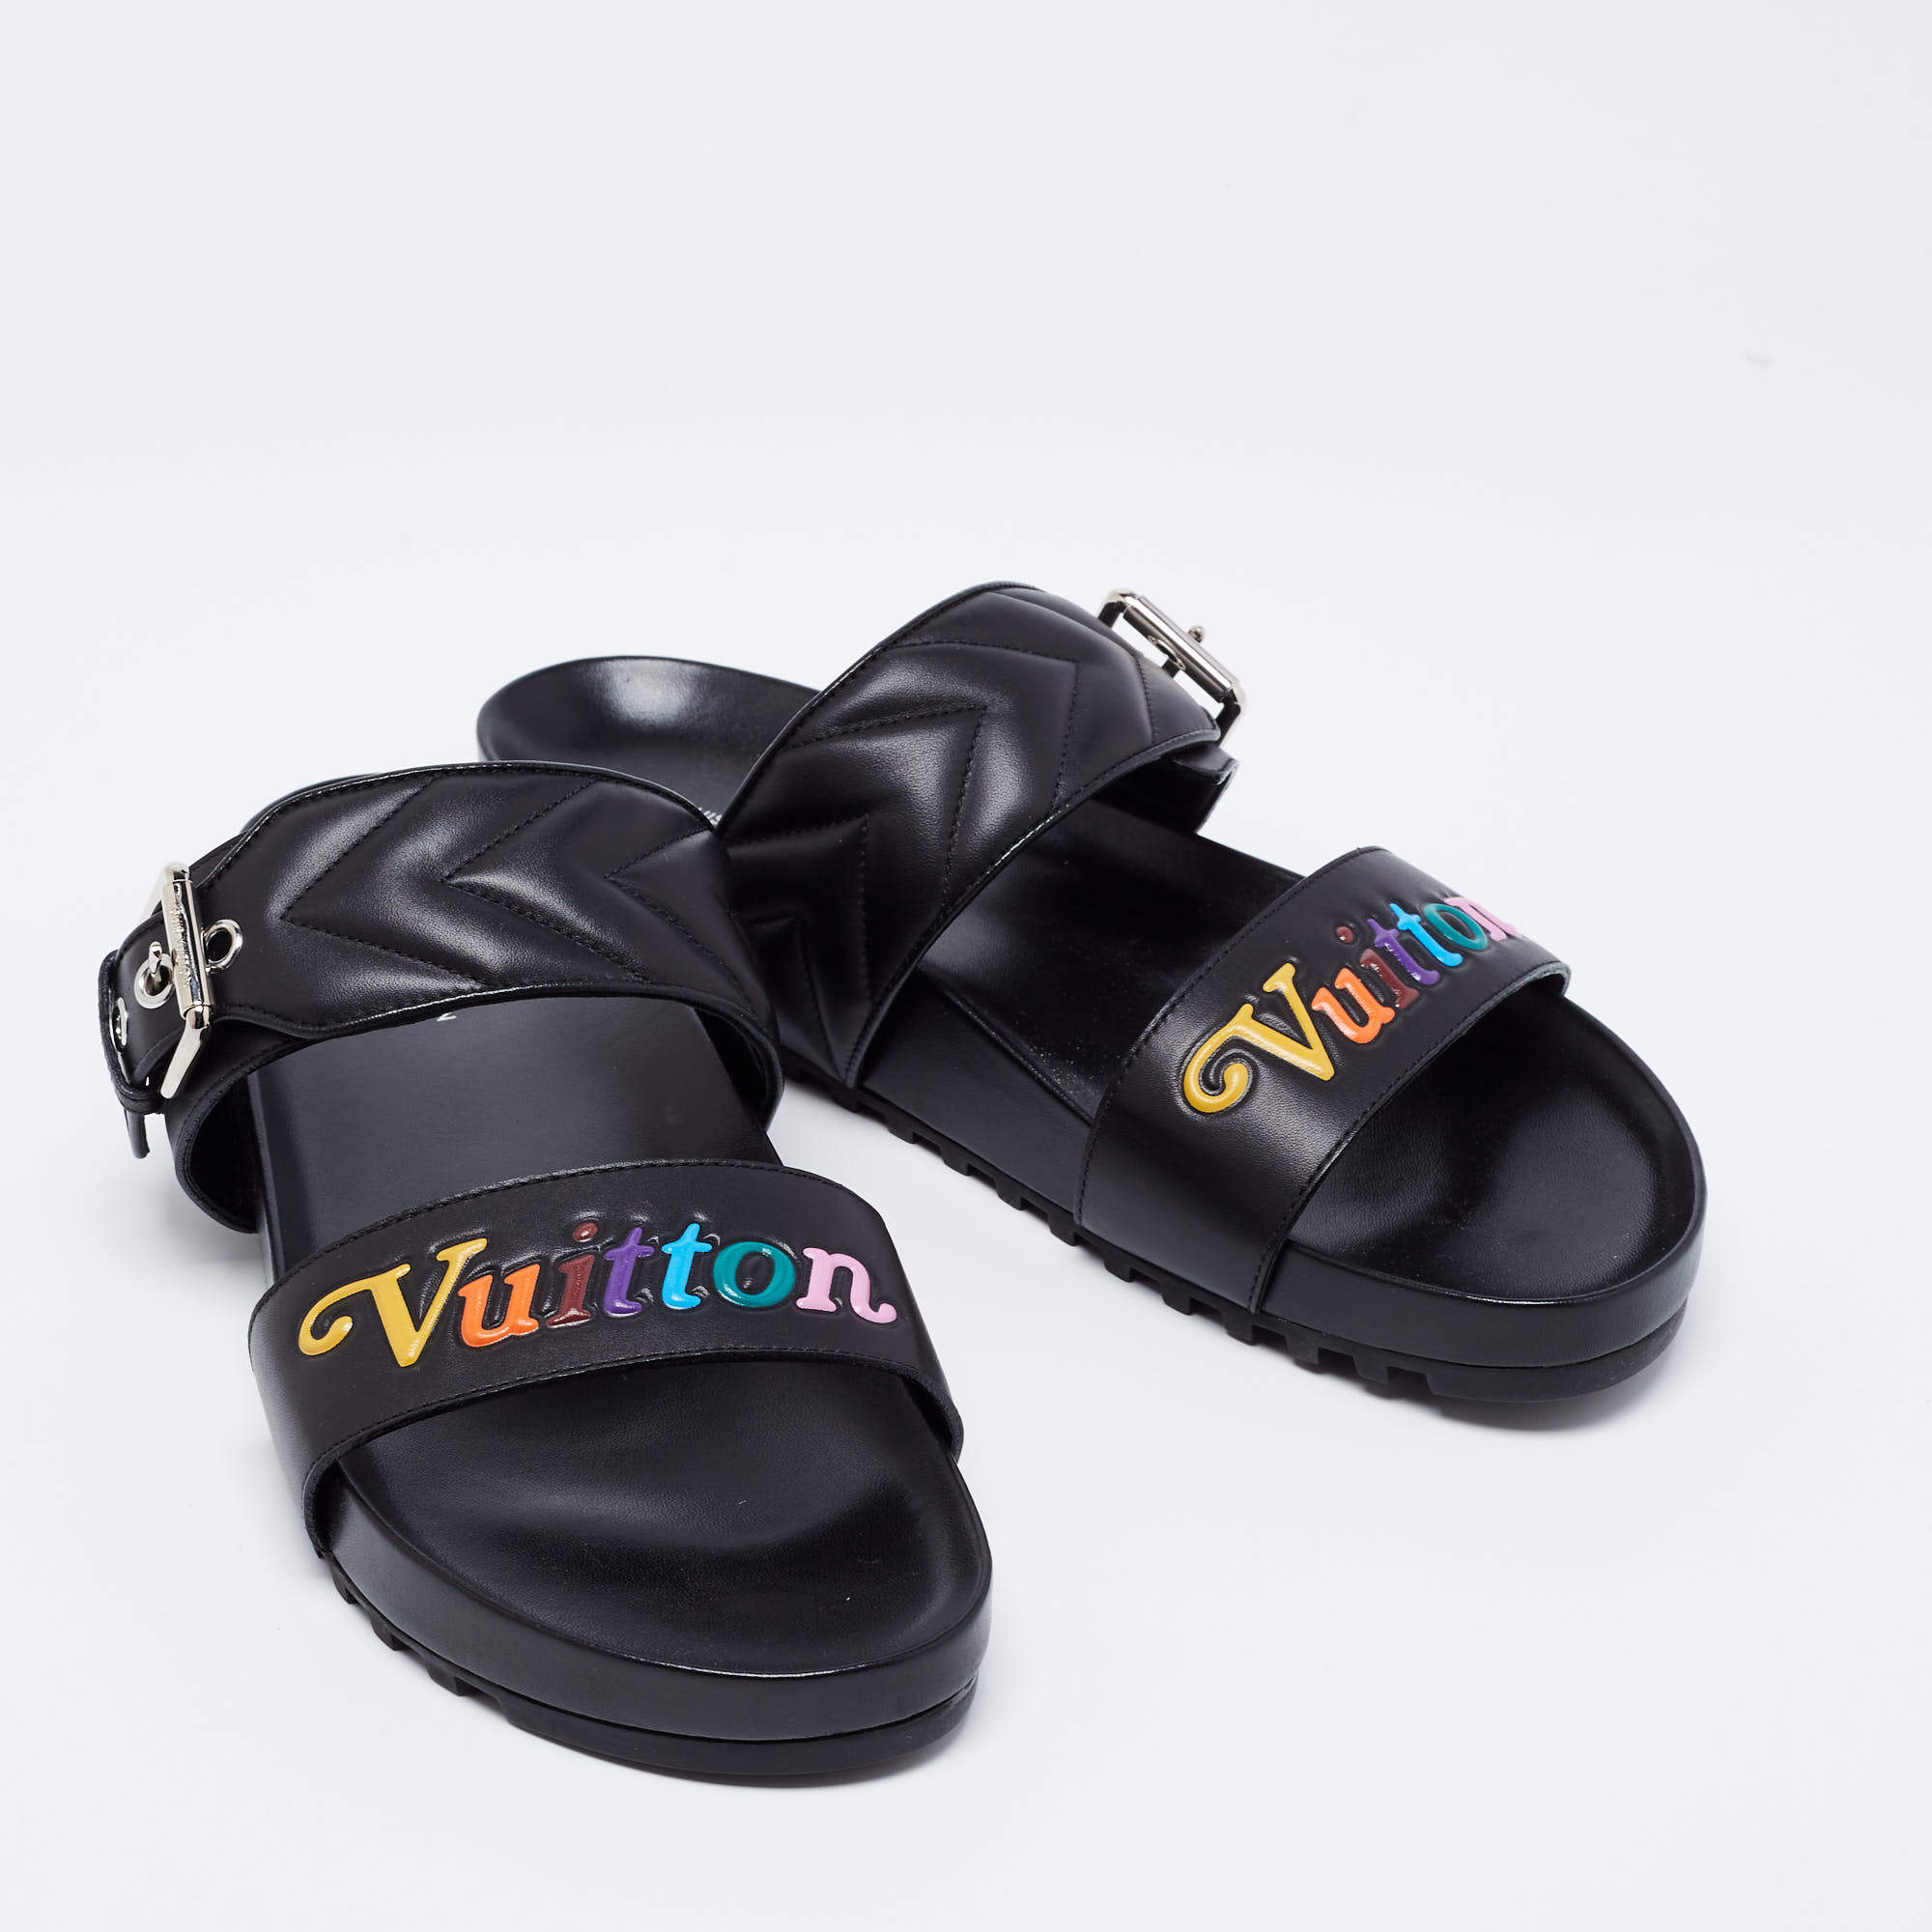 LOUIS VUITTON Bom Dia Flat Mule Sandals 41 Black 1034232